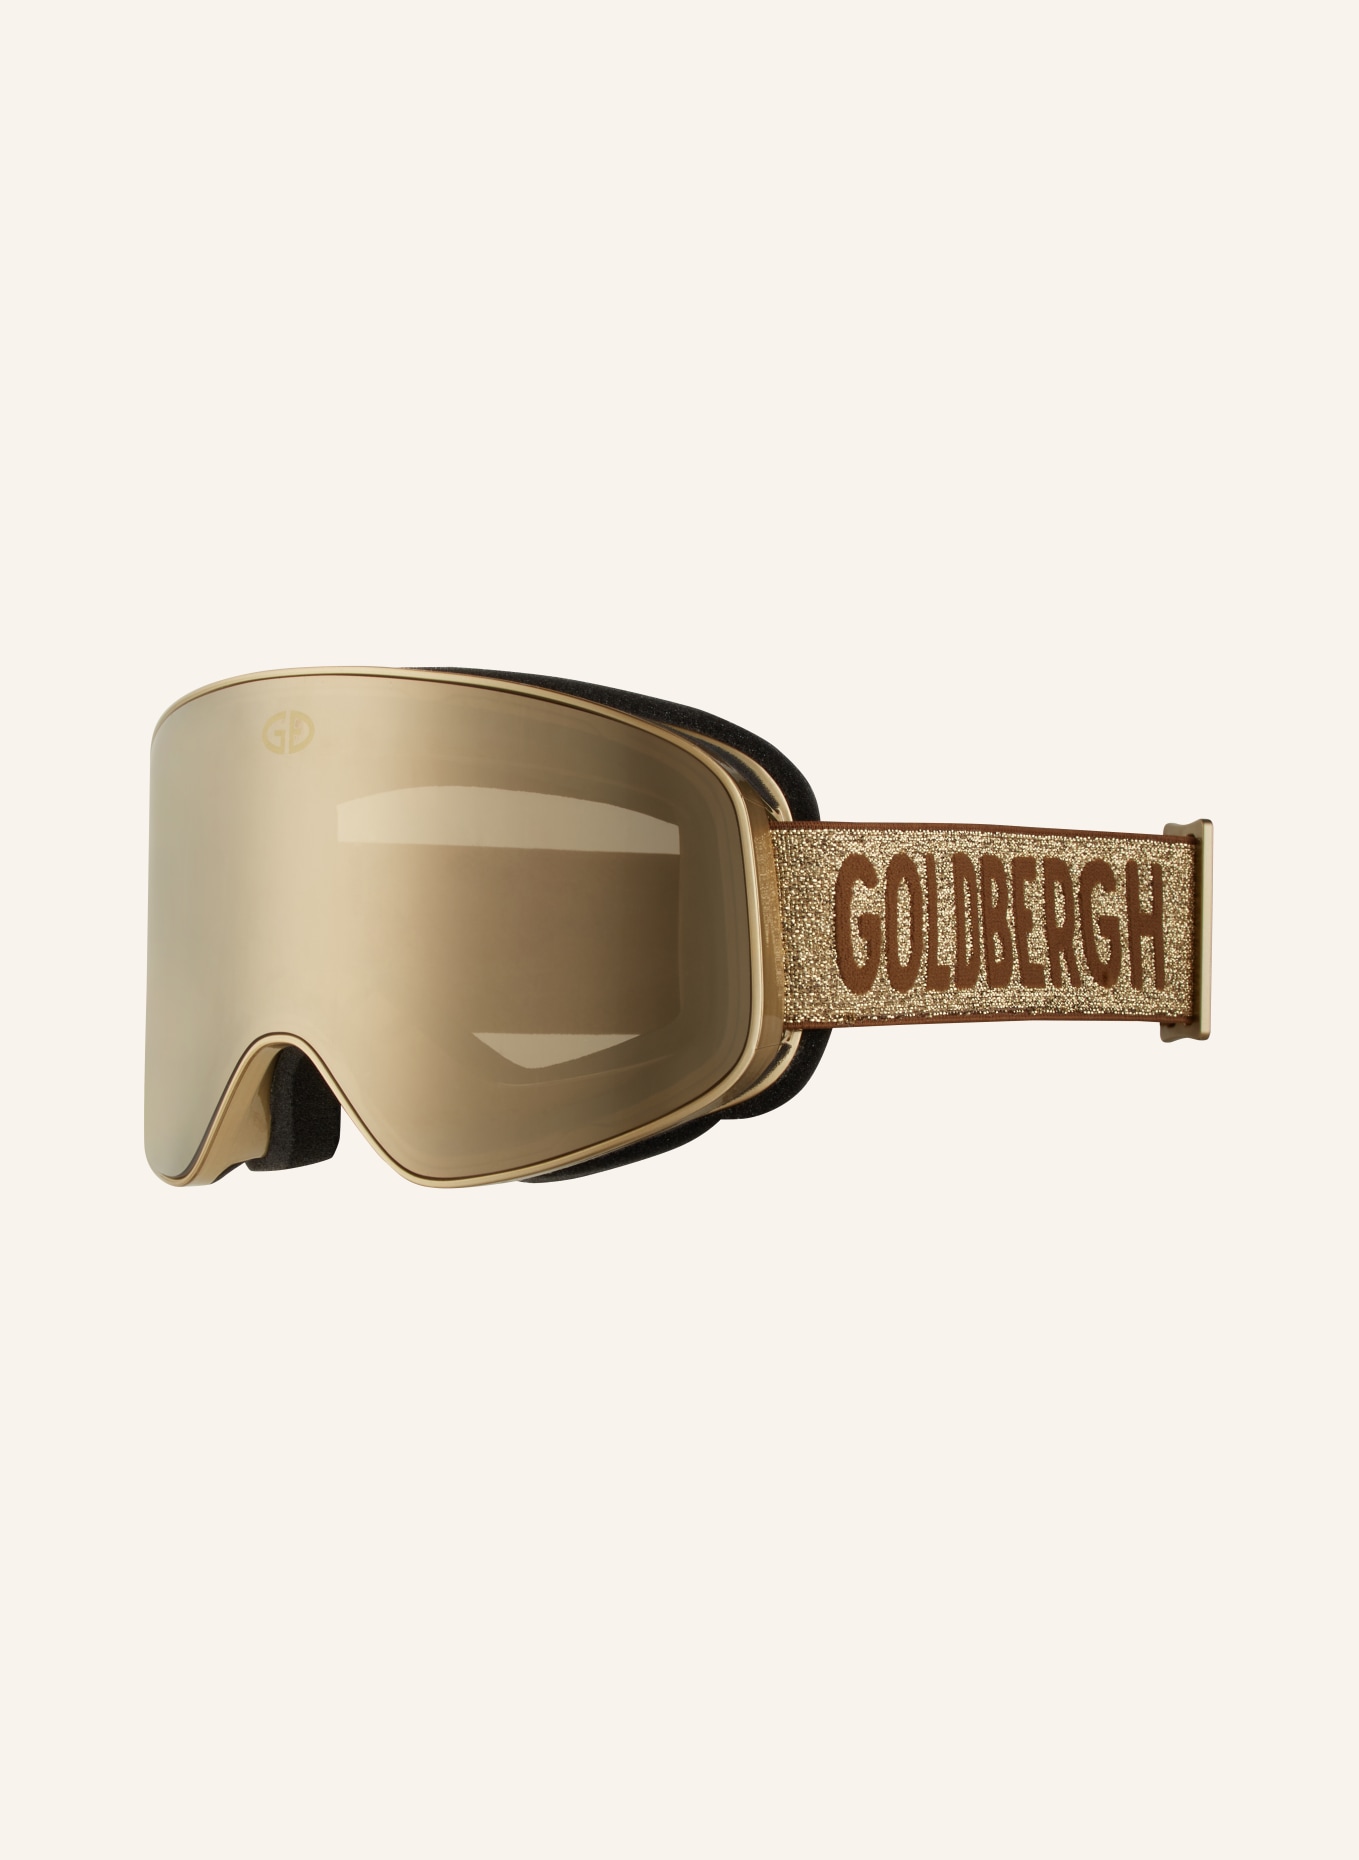 GOLDBERGH Skibrille HEADTURNER, Farbe: 7100 - GOLD VERSPIEGELT (Bild 1)